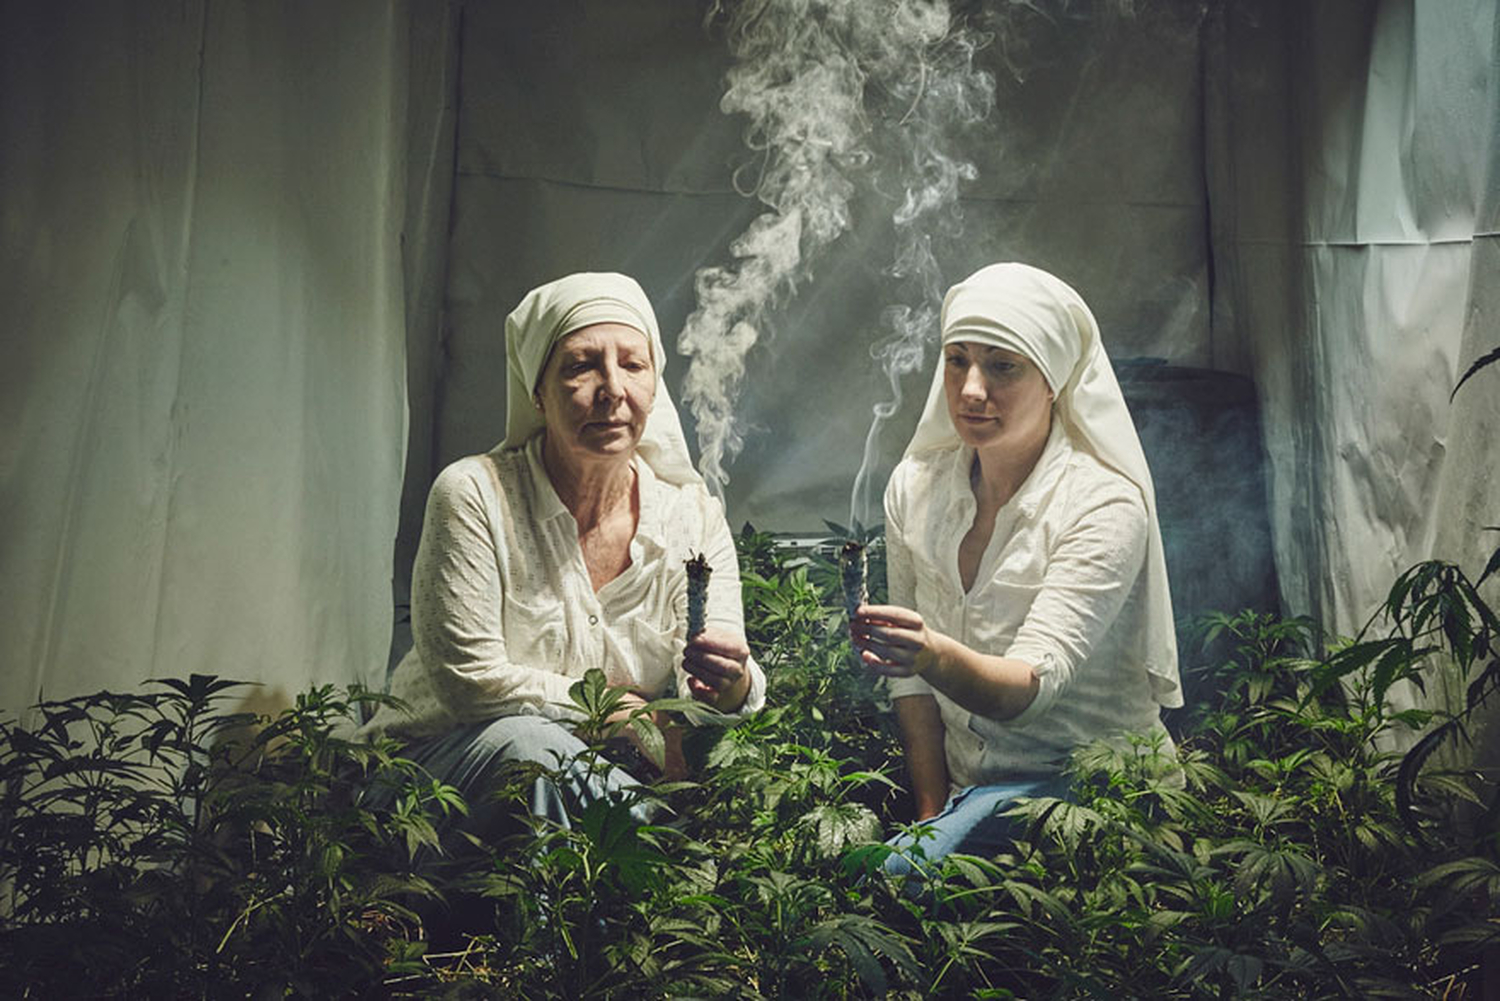 La monjas que cultivan marihuana para sanar el mundo